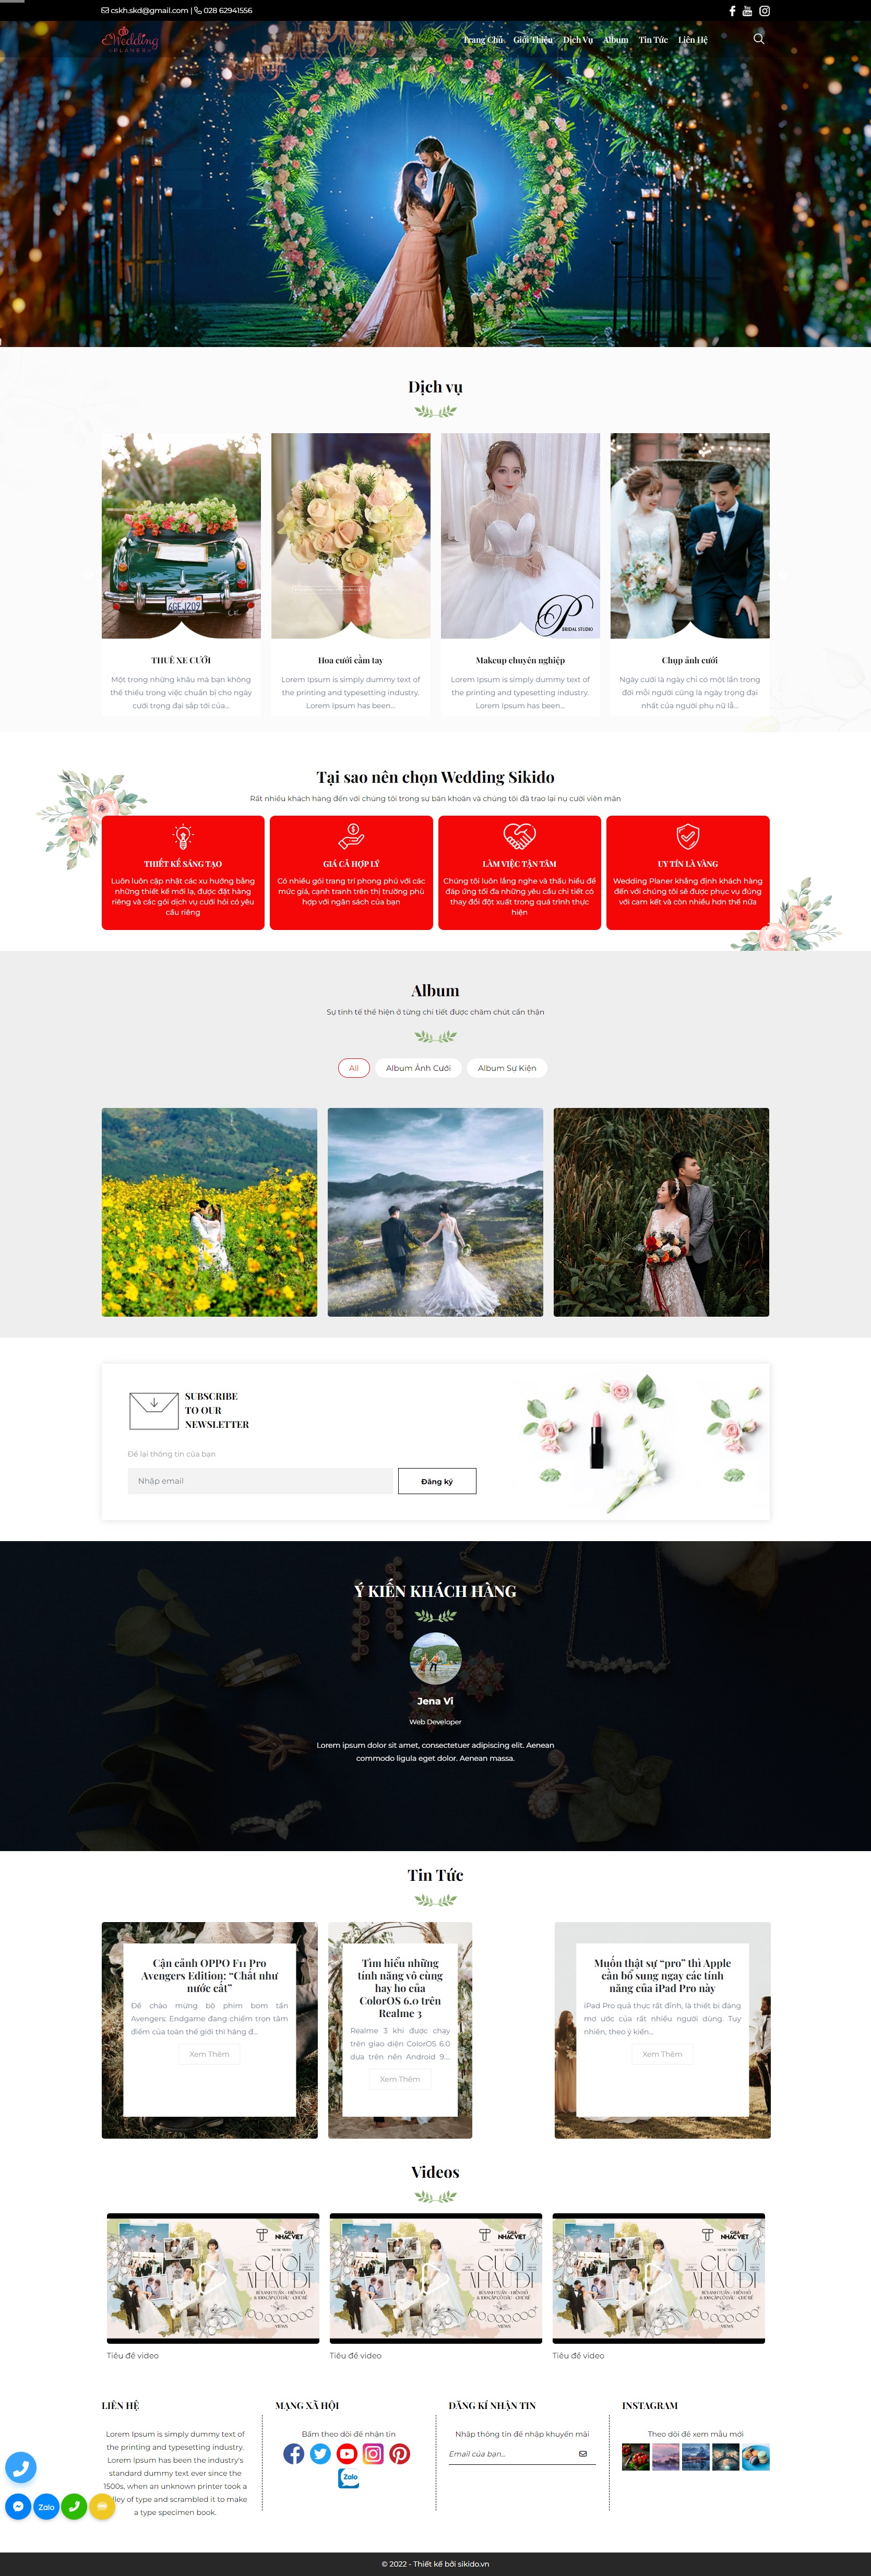 Quy trình thiết kế website tại Thiên Thanh Tech